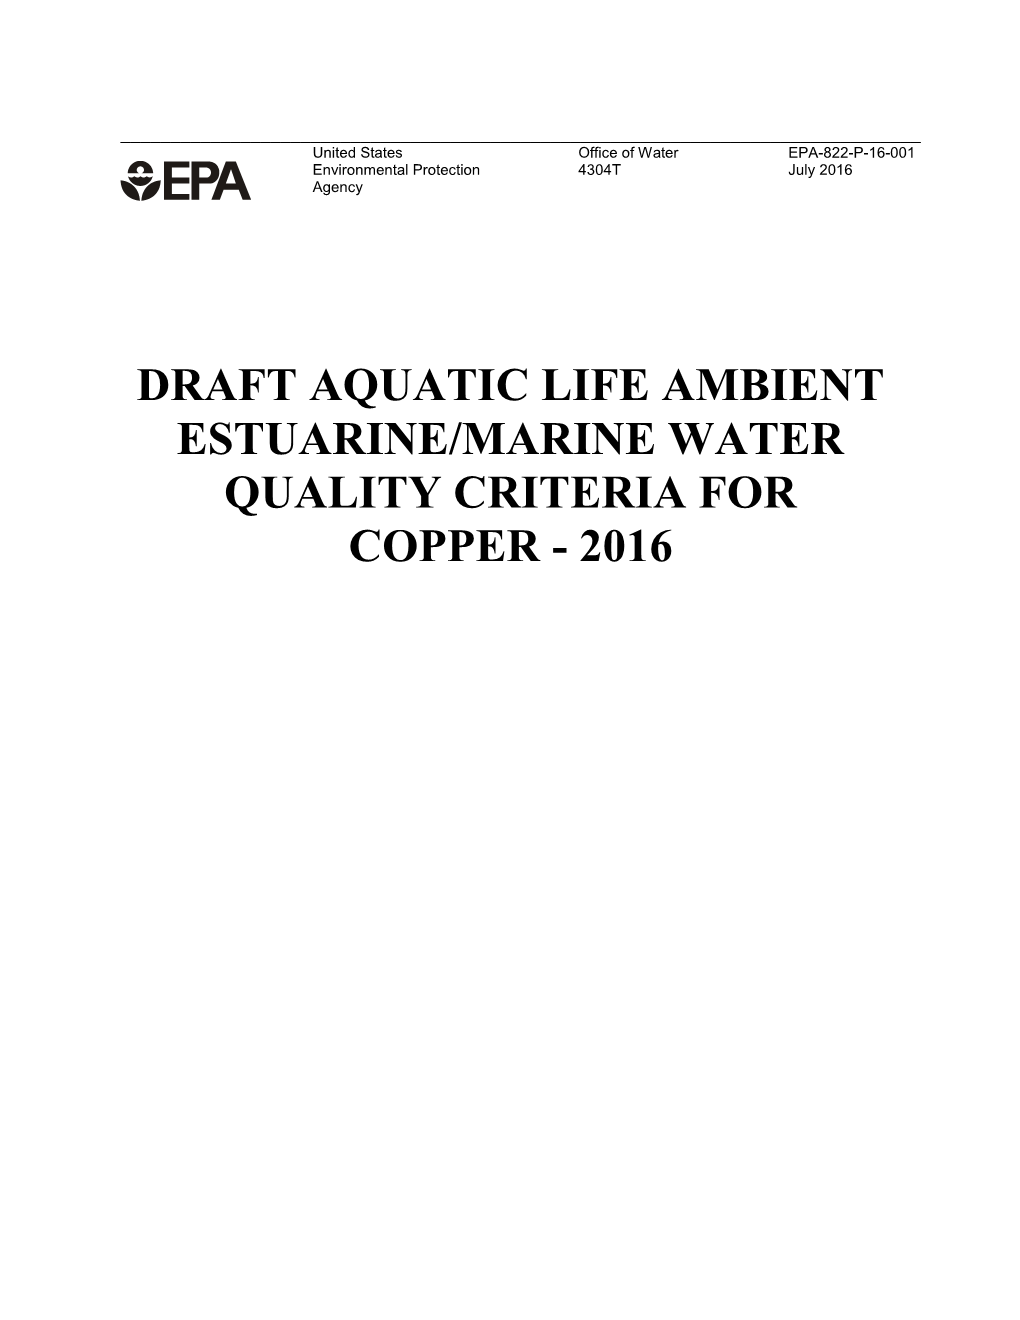 Draft Aquatic Life Ambient Estuarine/Marine Water Quality Criteria for Copper - 2016